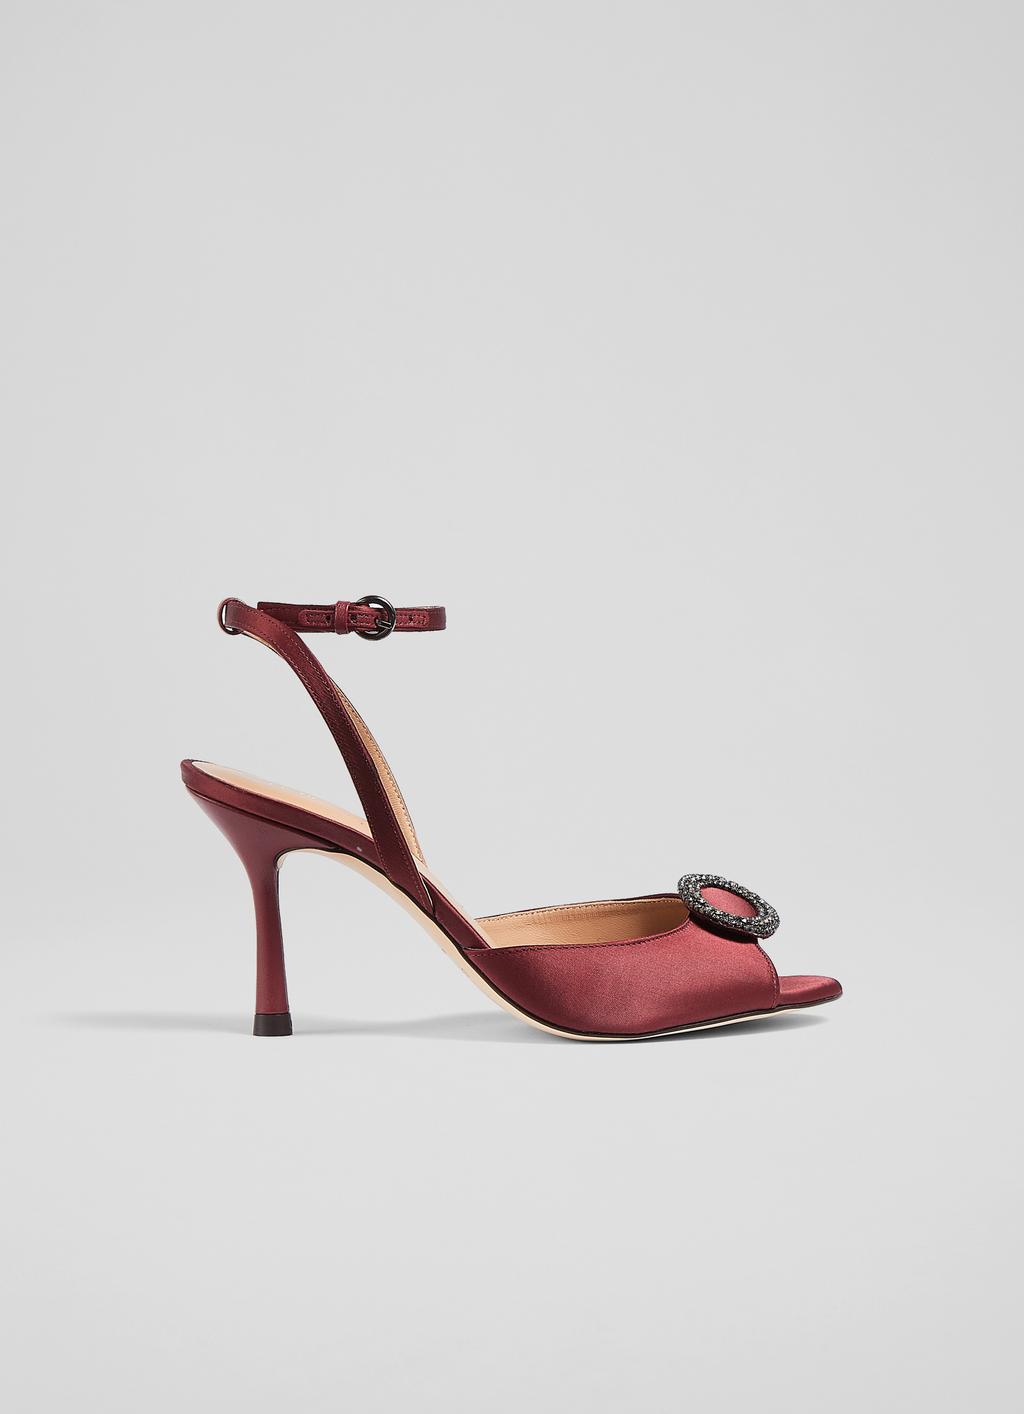 Belle Burgundy Satin Crystal Embellished Sandals | Sandals | Shoes 